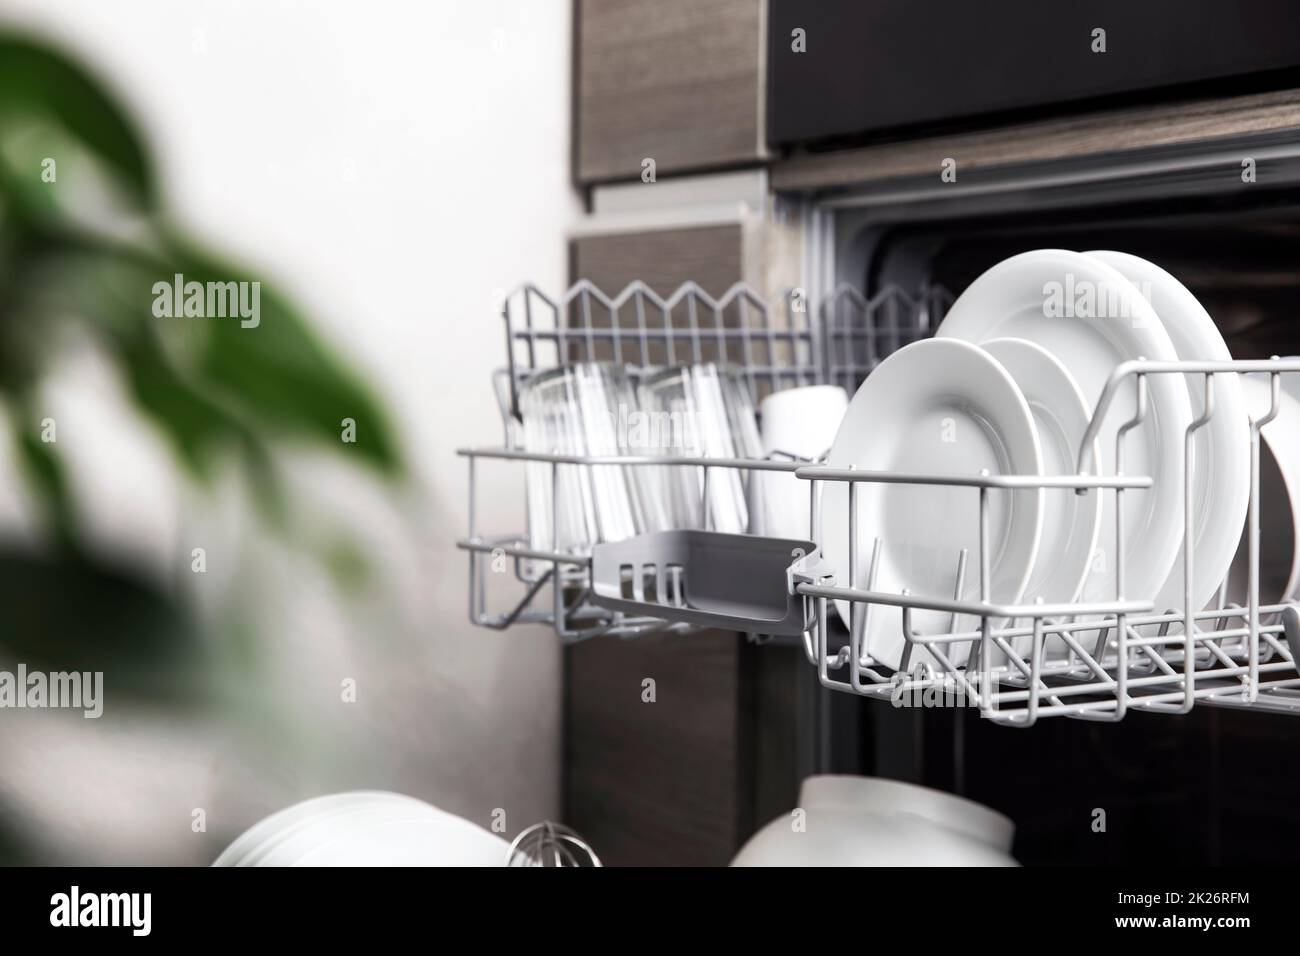 Ouvrez le lave-vaisselle avec un ustensile propre à l'intérieur, des couverts, des verres et de la vaisselle dans la cuisine Banque D'Images